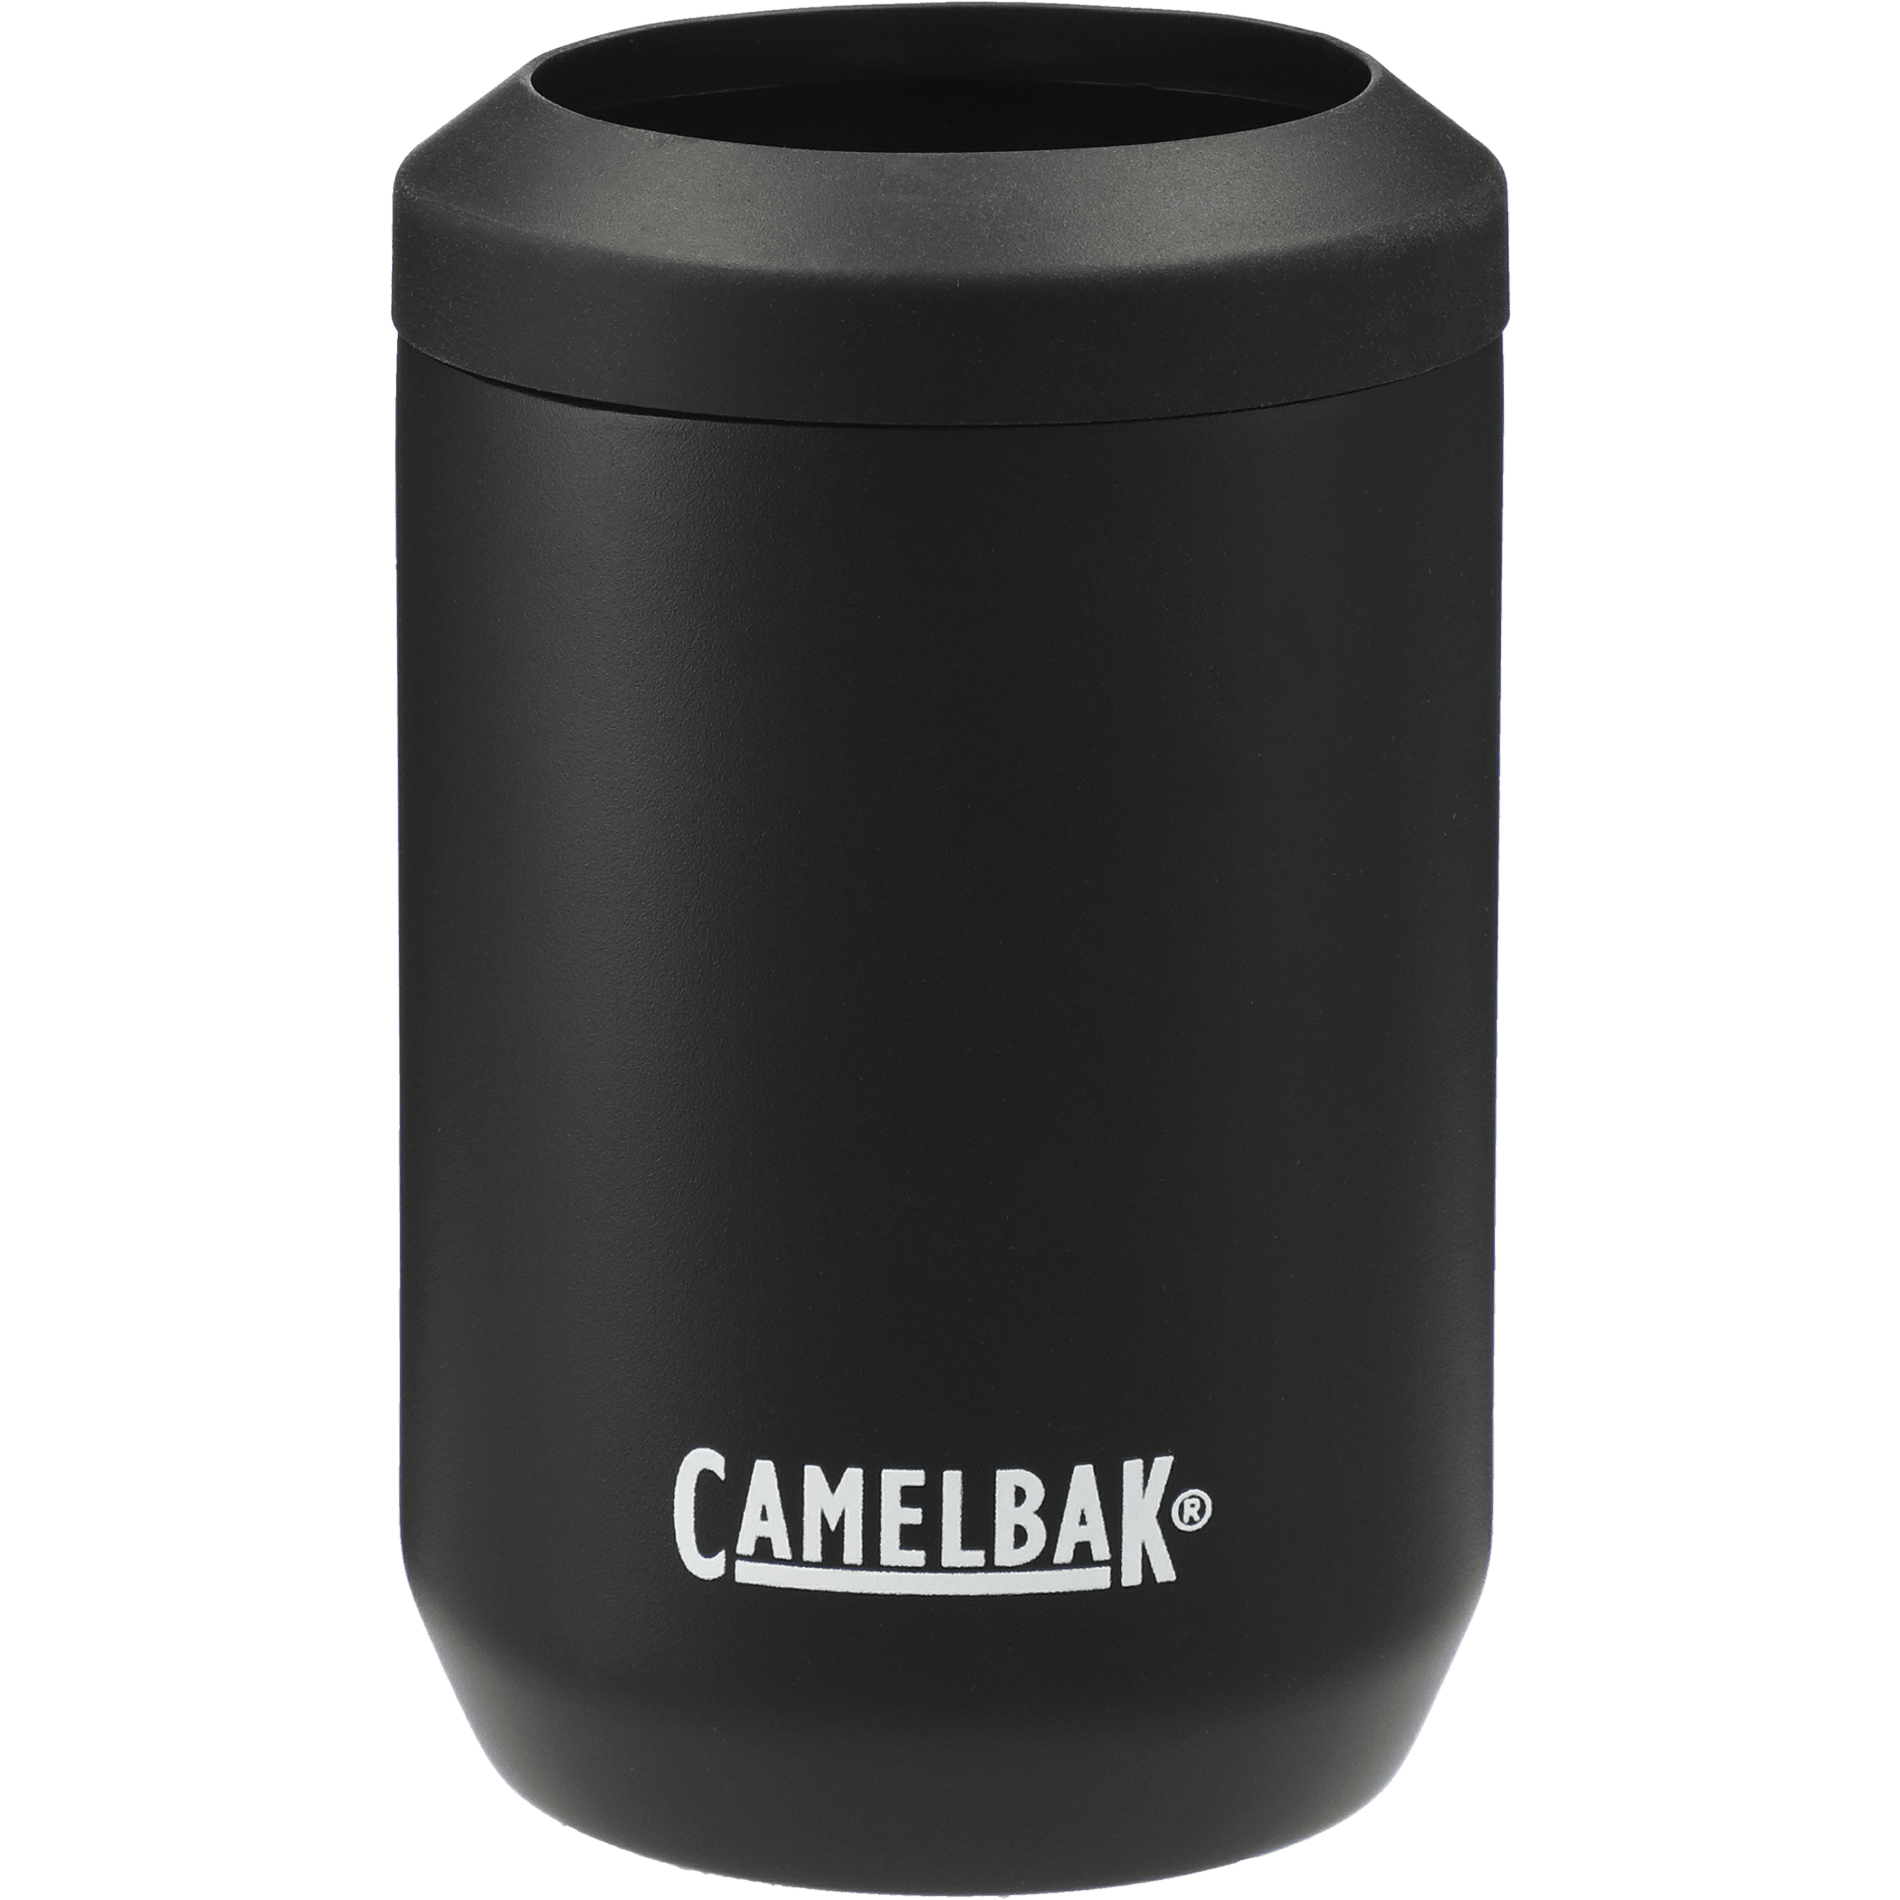 CamelBak 1627-40 - Can cooler 12oz $21.74 - Bags